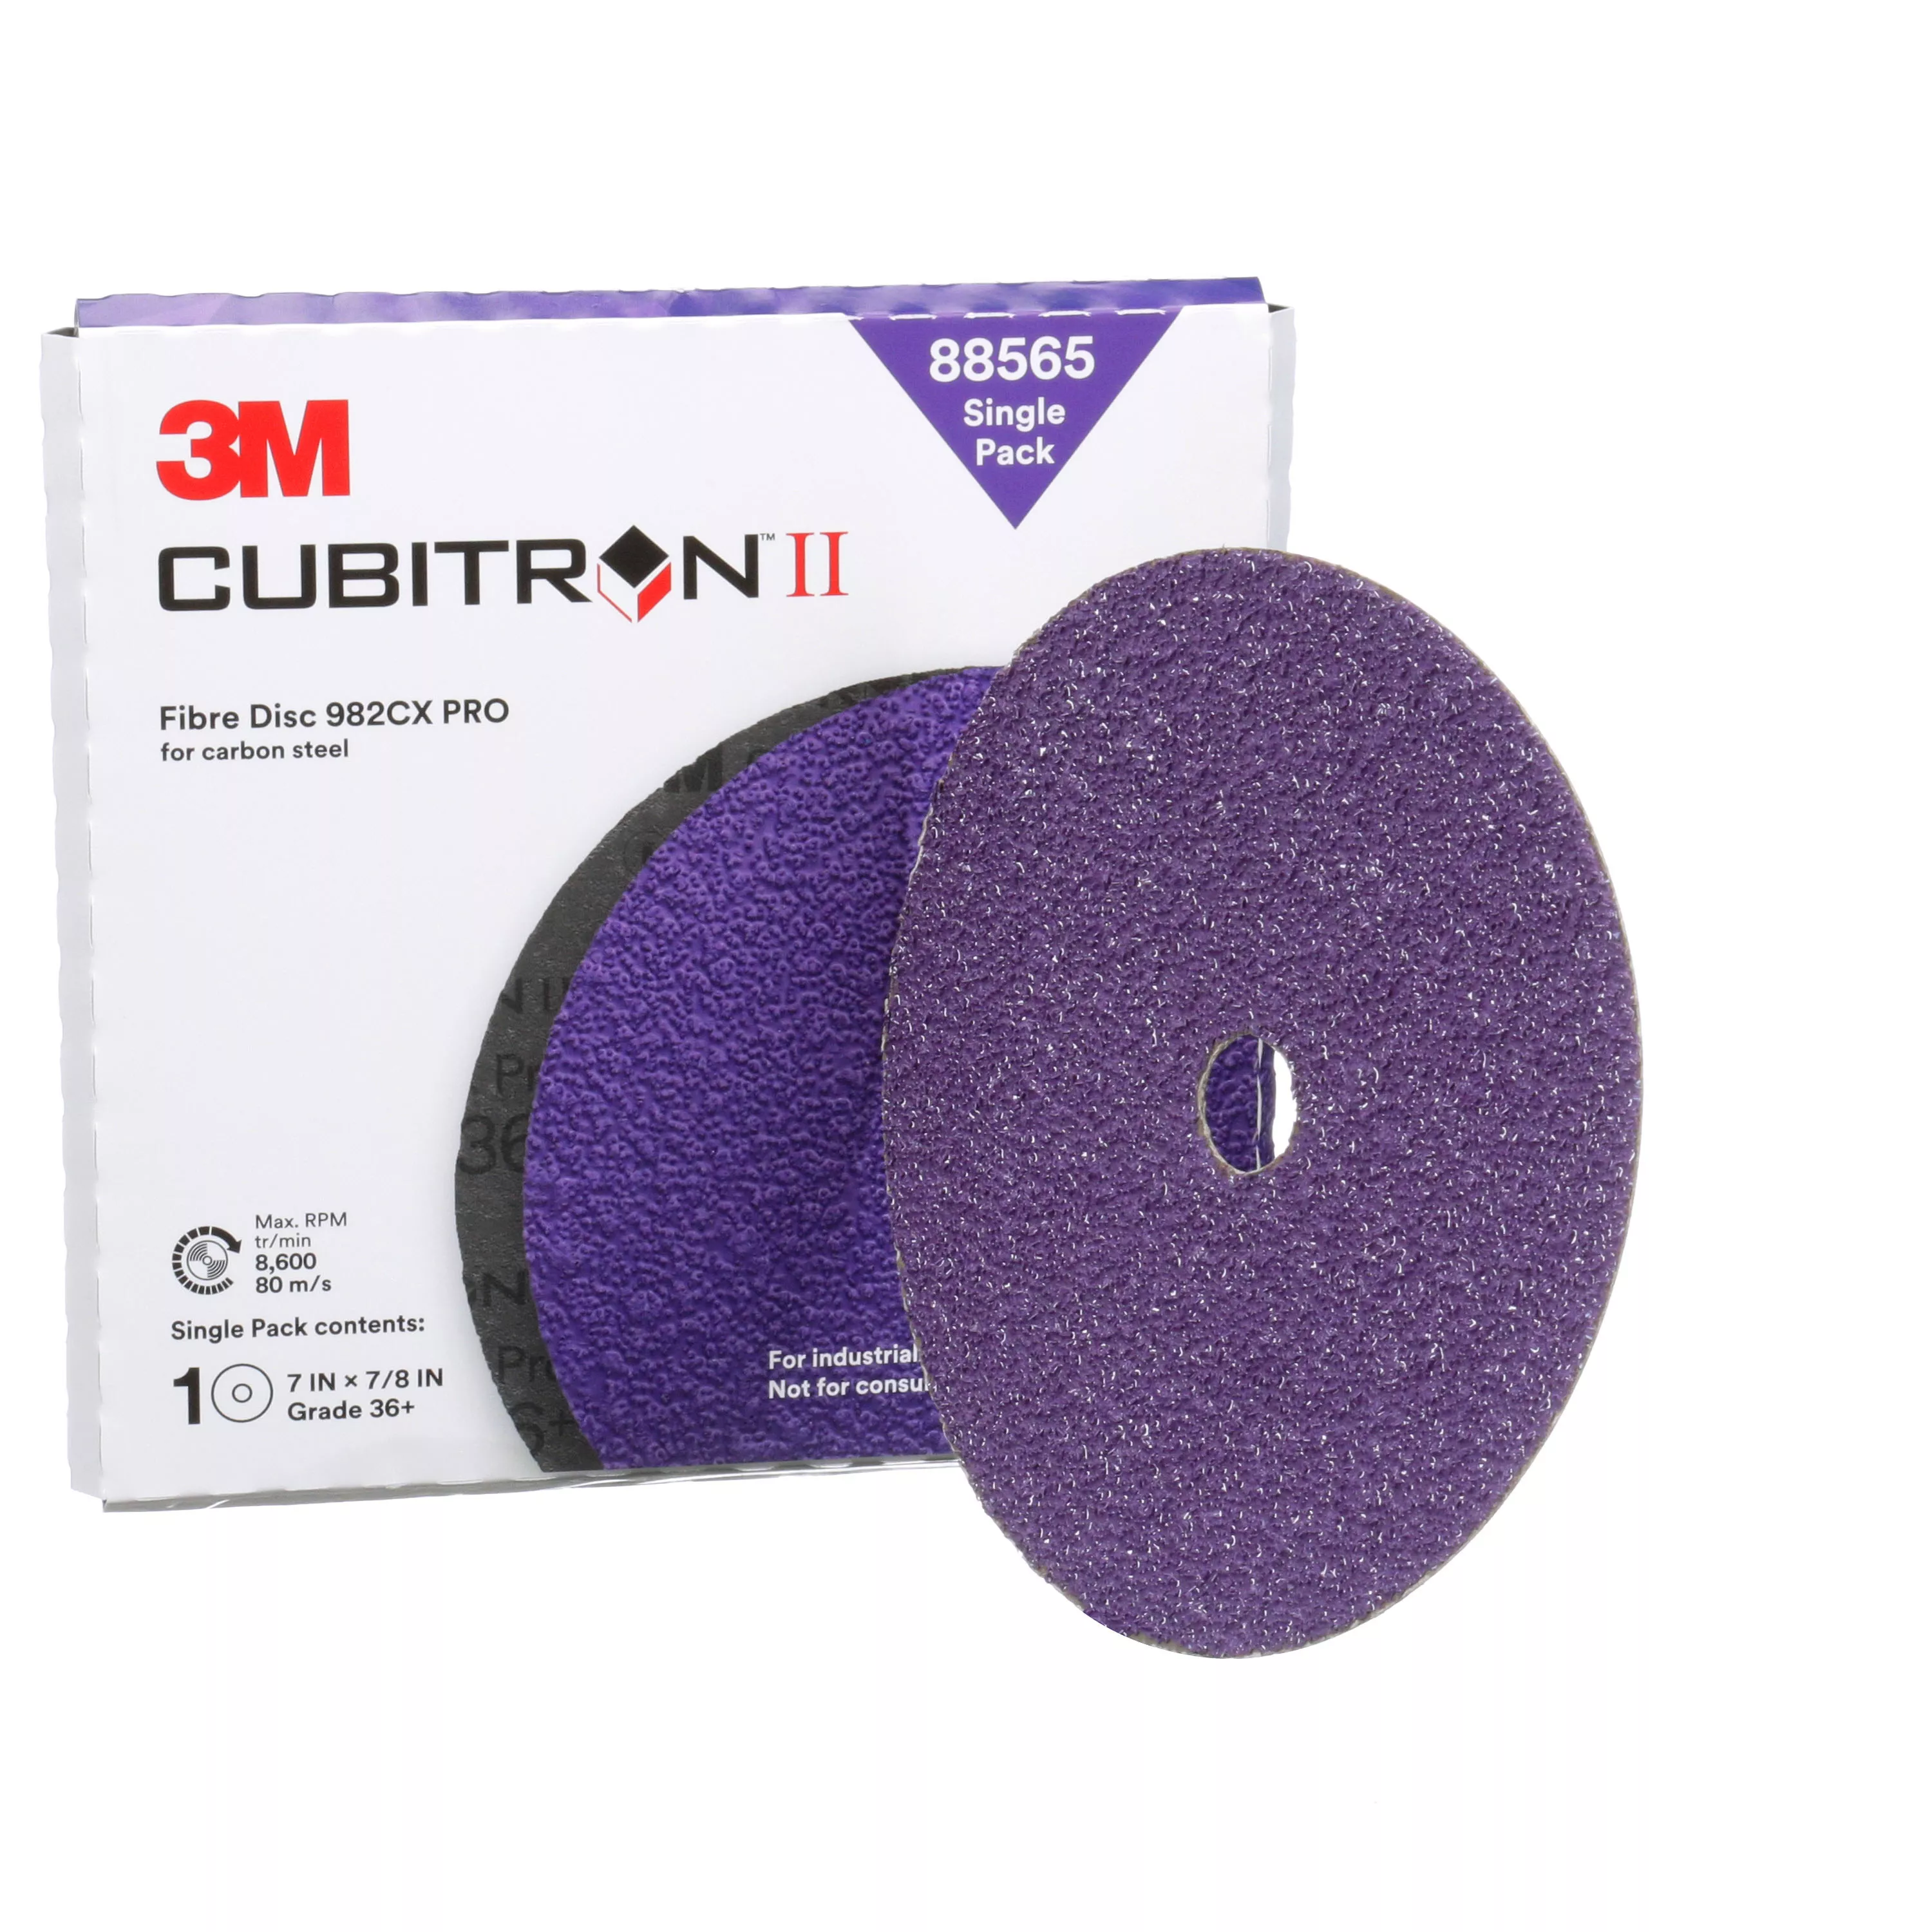 SKU 7100246523 | 3M™ Cubitron™ II Fibre Disc 982CX Pro